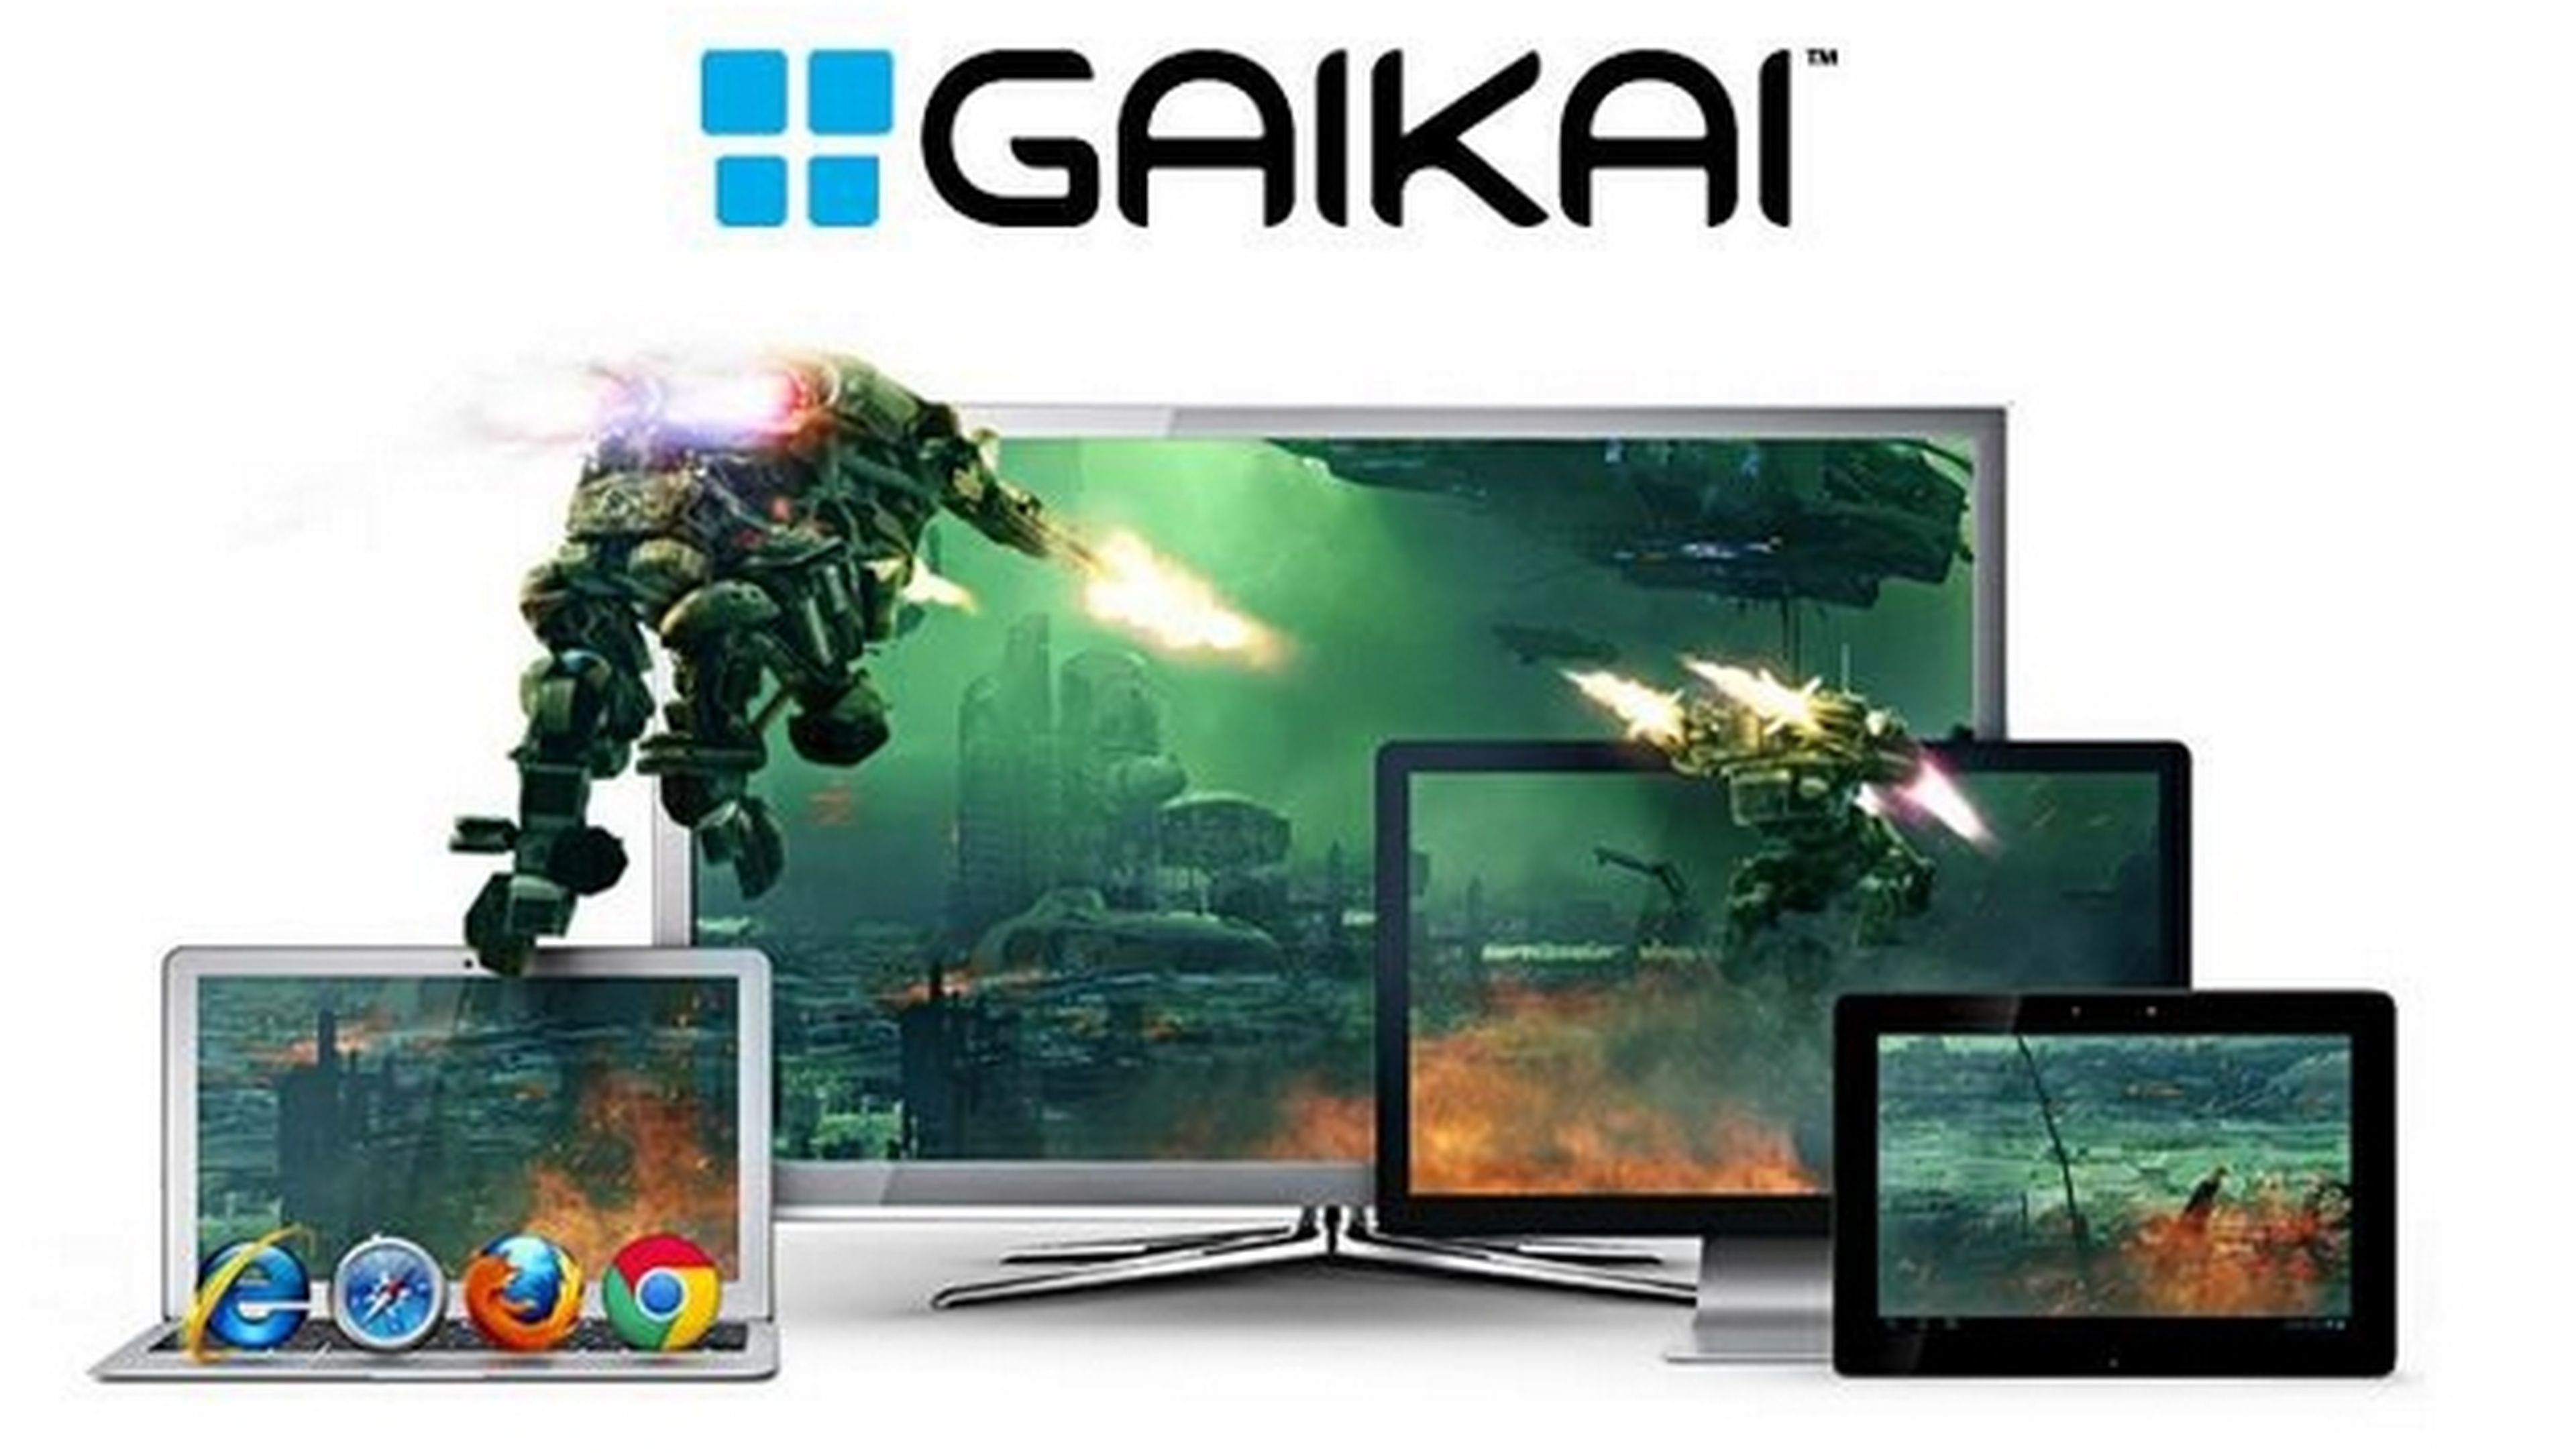 Gaikai, juega a juegos de PS4 en tu smartphone, PC o tablet desde la nube, en 2015 en Europa